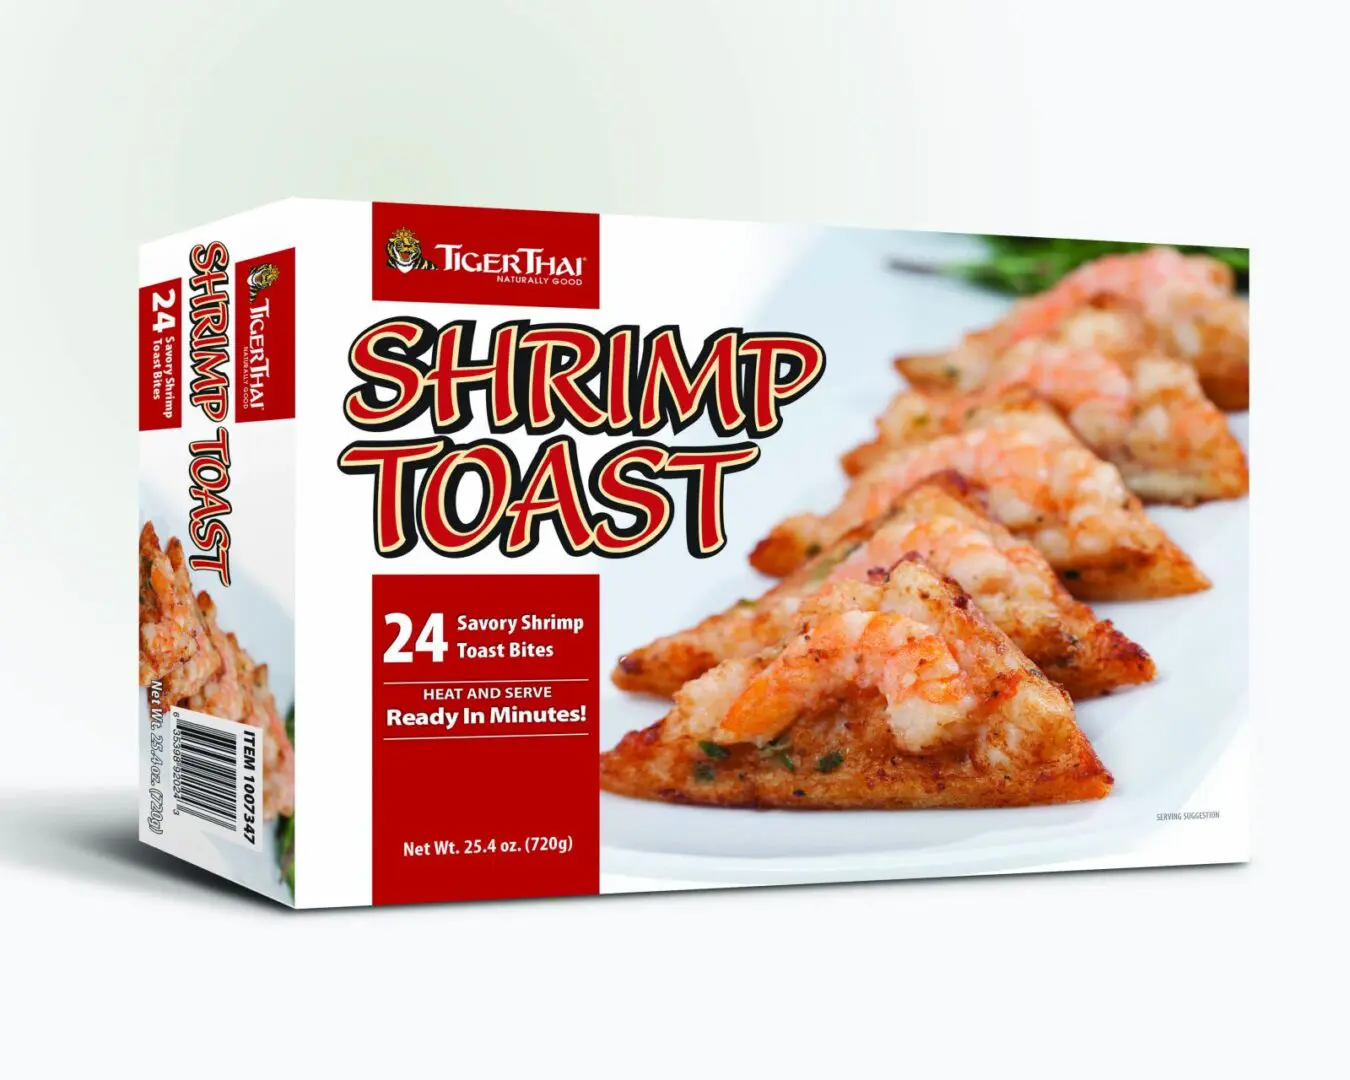 Shrimp toast